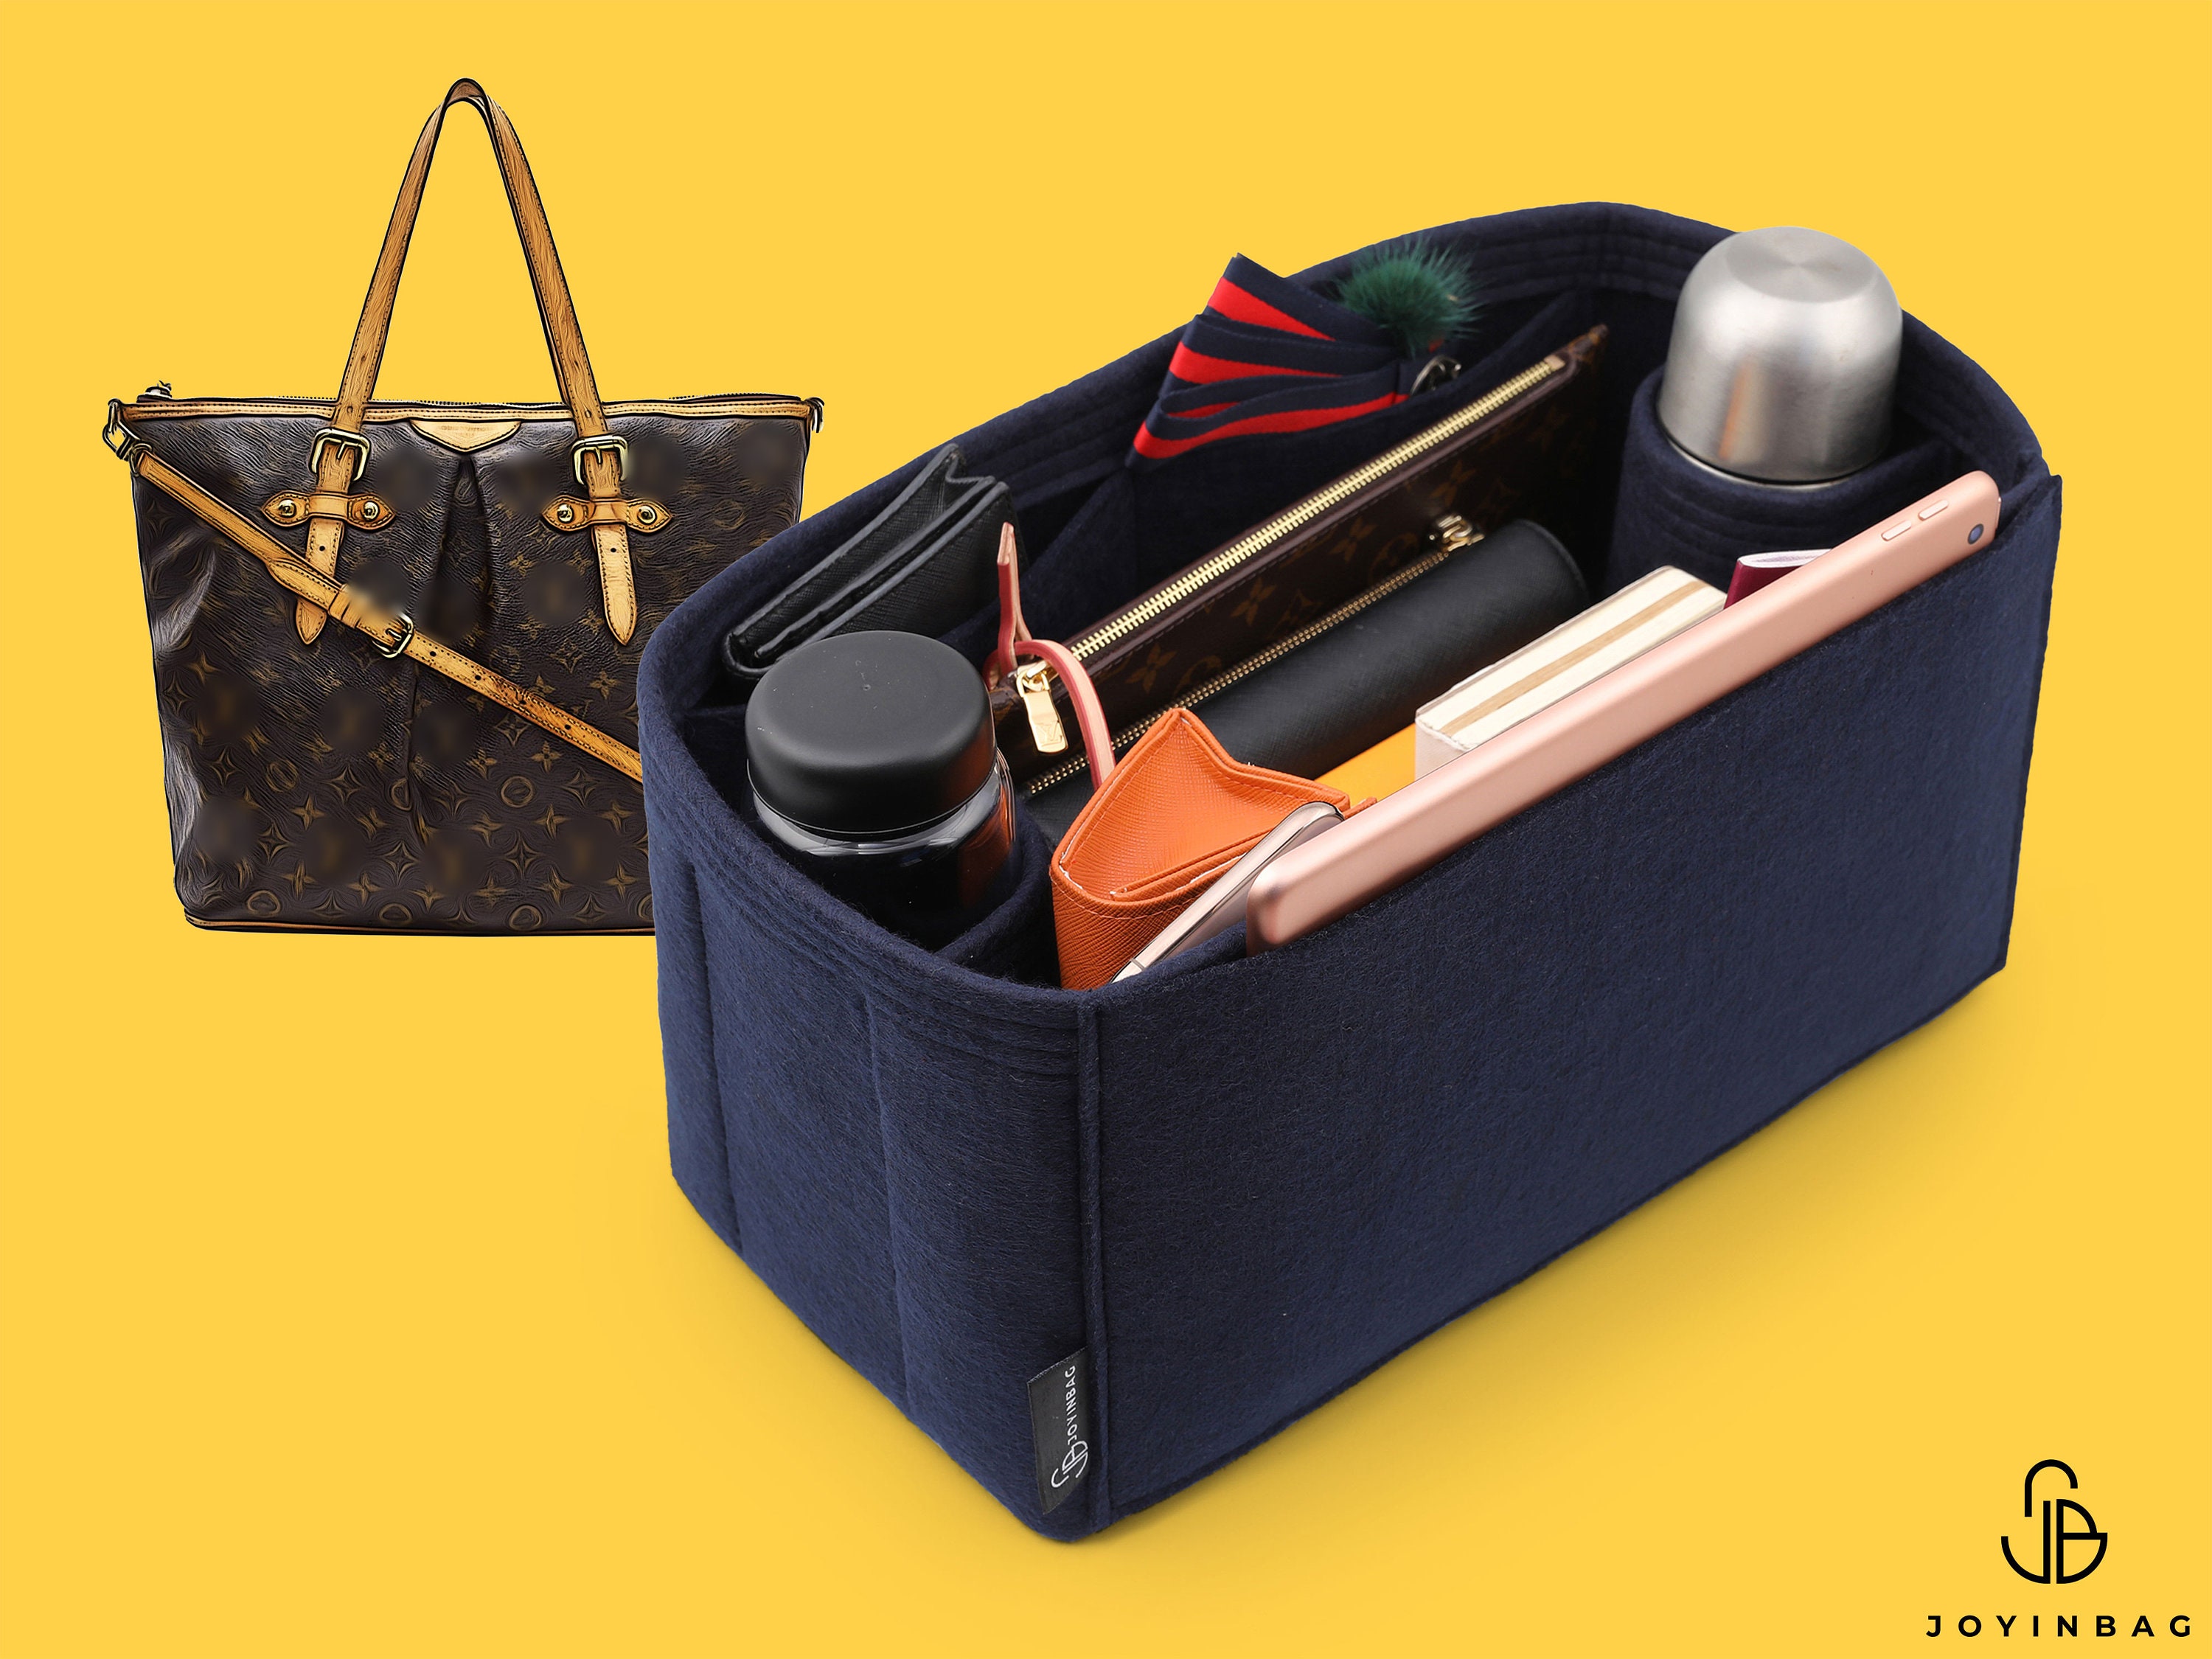 Bag Organizer for LV Tivoli PM - Premium Felt (Handmade/20 Colors)